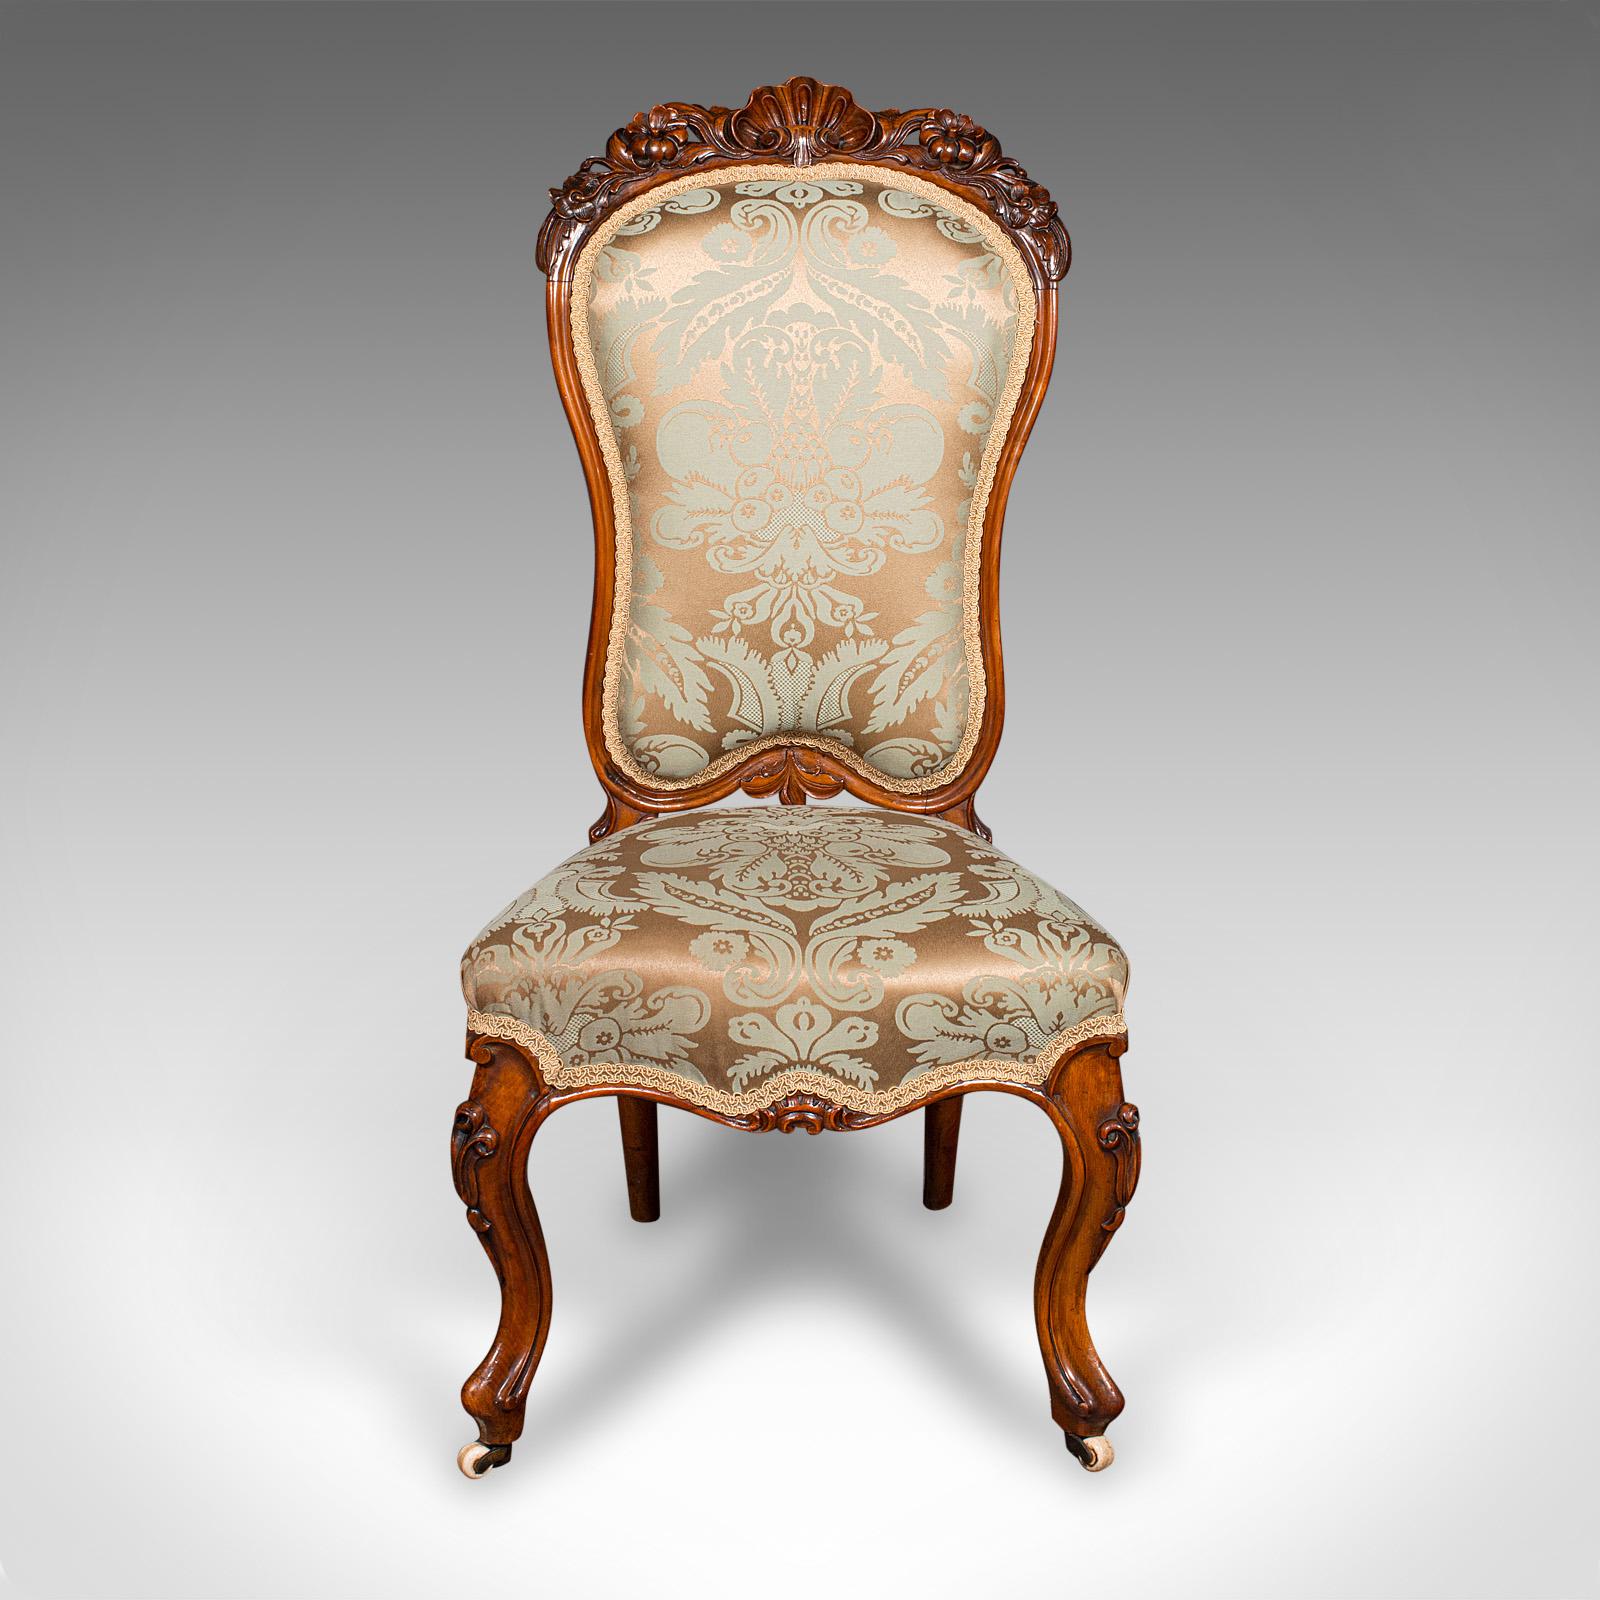 Il s'agit d'une chaise de salon ancienne. Siège de dame ou d'appoint en noyer, datant du début de la période victorienne, vers 1840.

Chaise délicieusement rembourrée avec un aspect décoratif raffiné
Présente une patine d'ancienneté souhaitable et